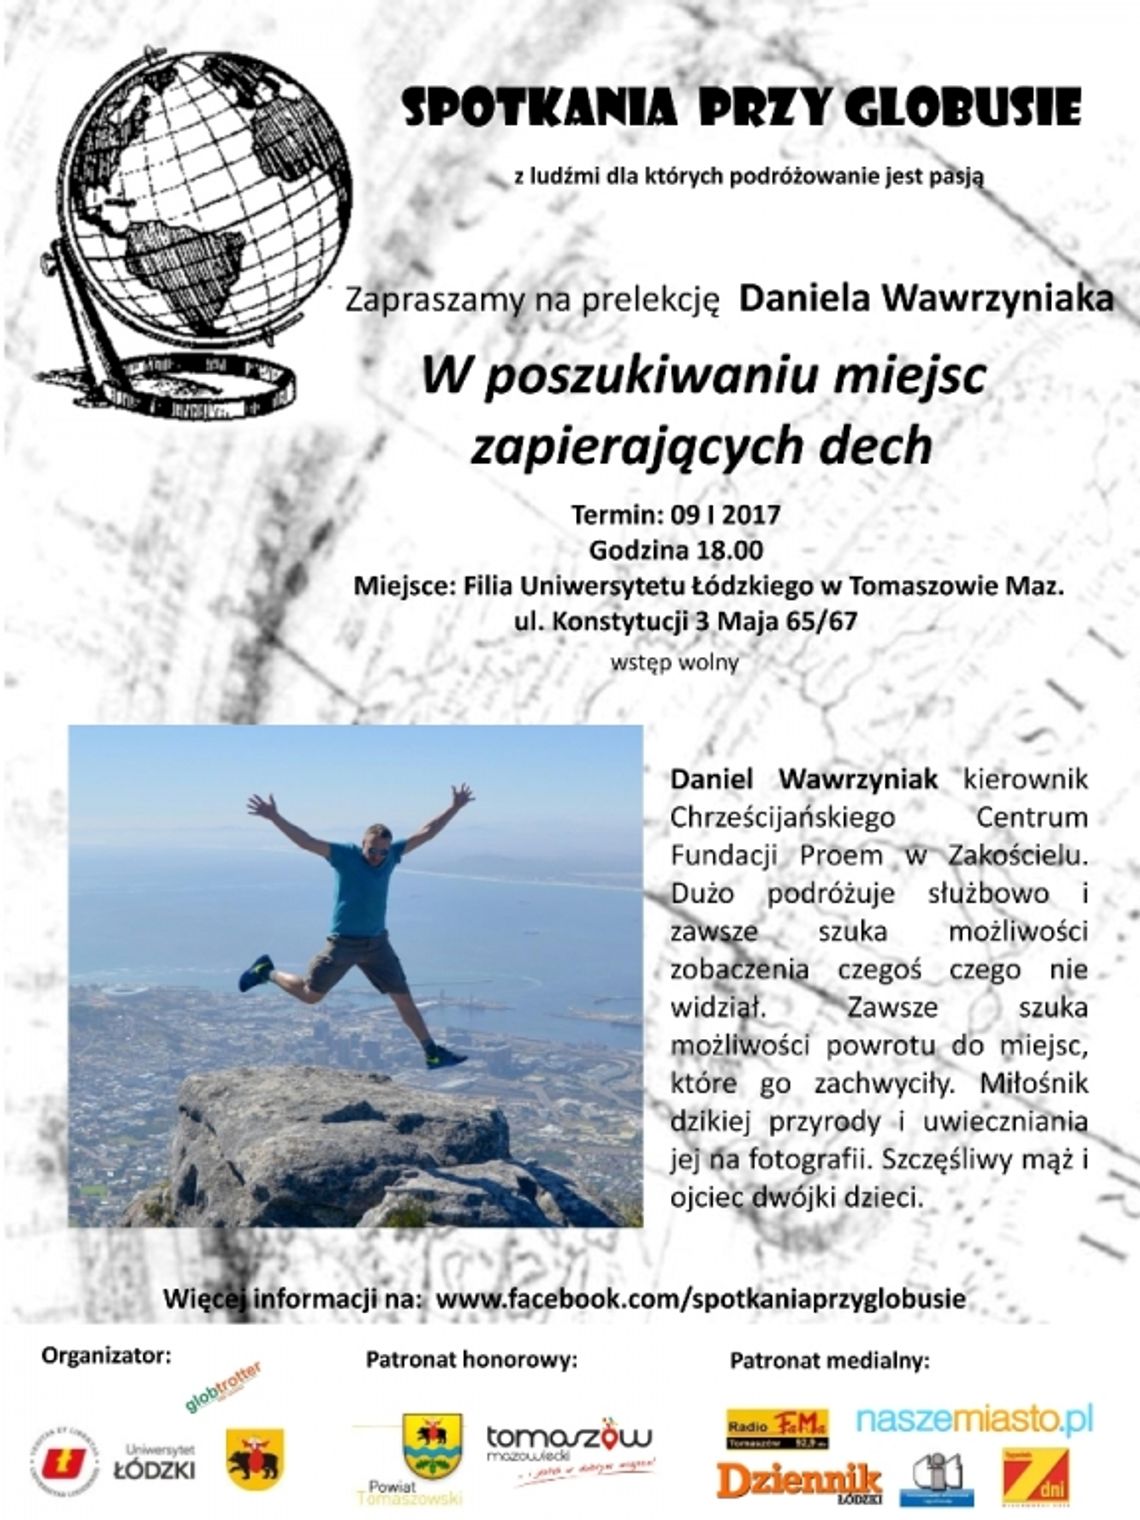 Spotkania przy globusie: Daniel Wawrzyniak